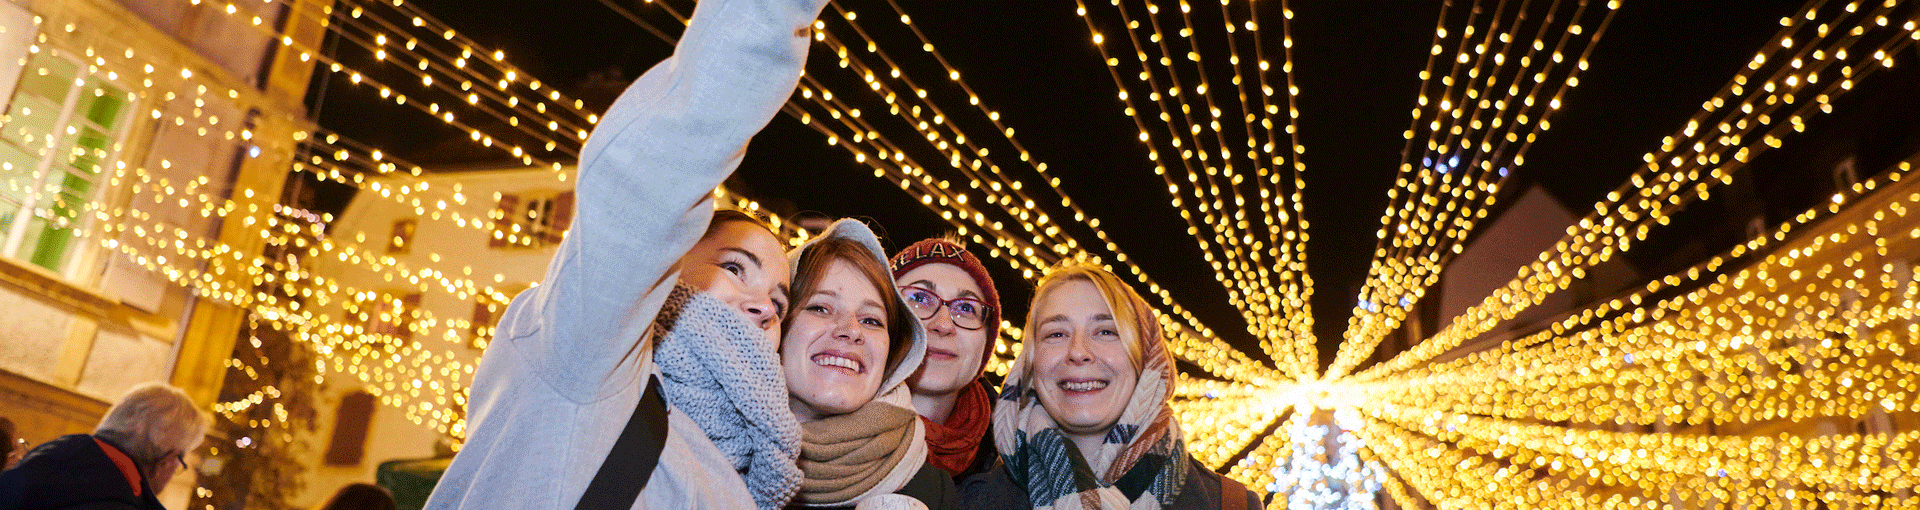 Un groupe de jeunes prend un selfie sous le chapiteau lumineux de la place des Halles